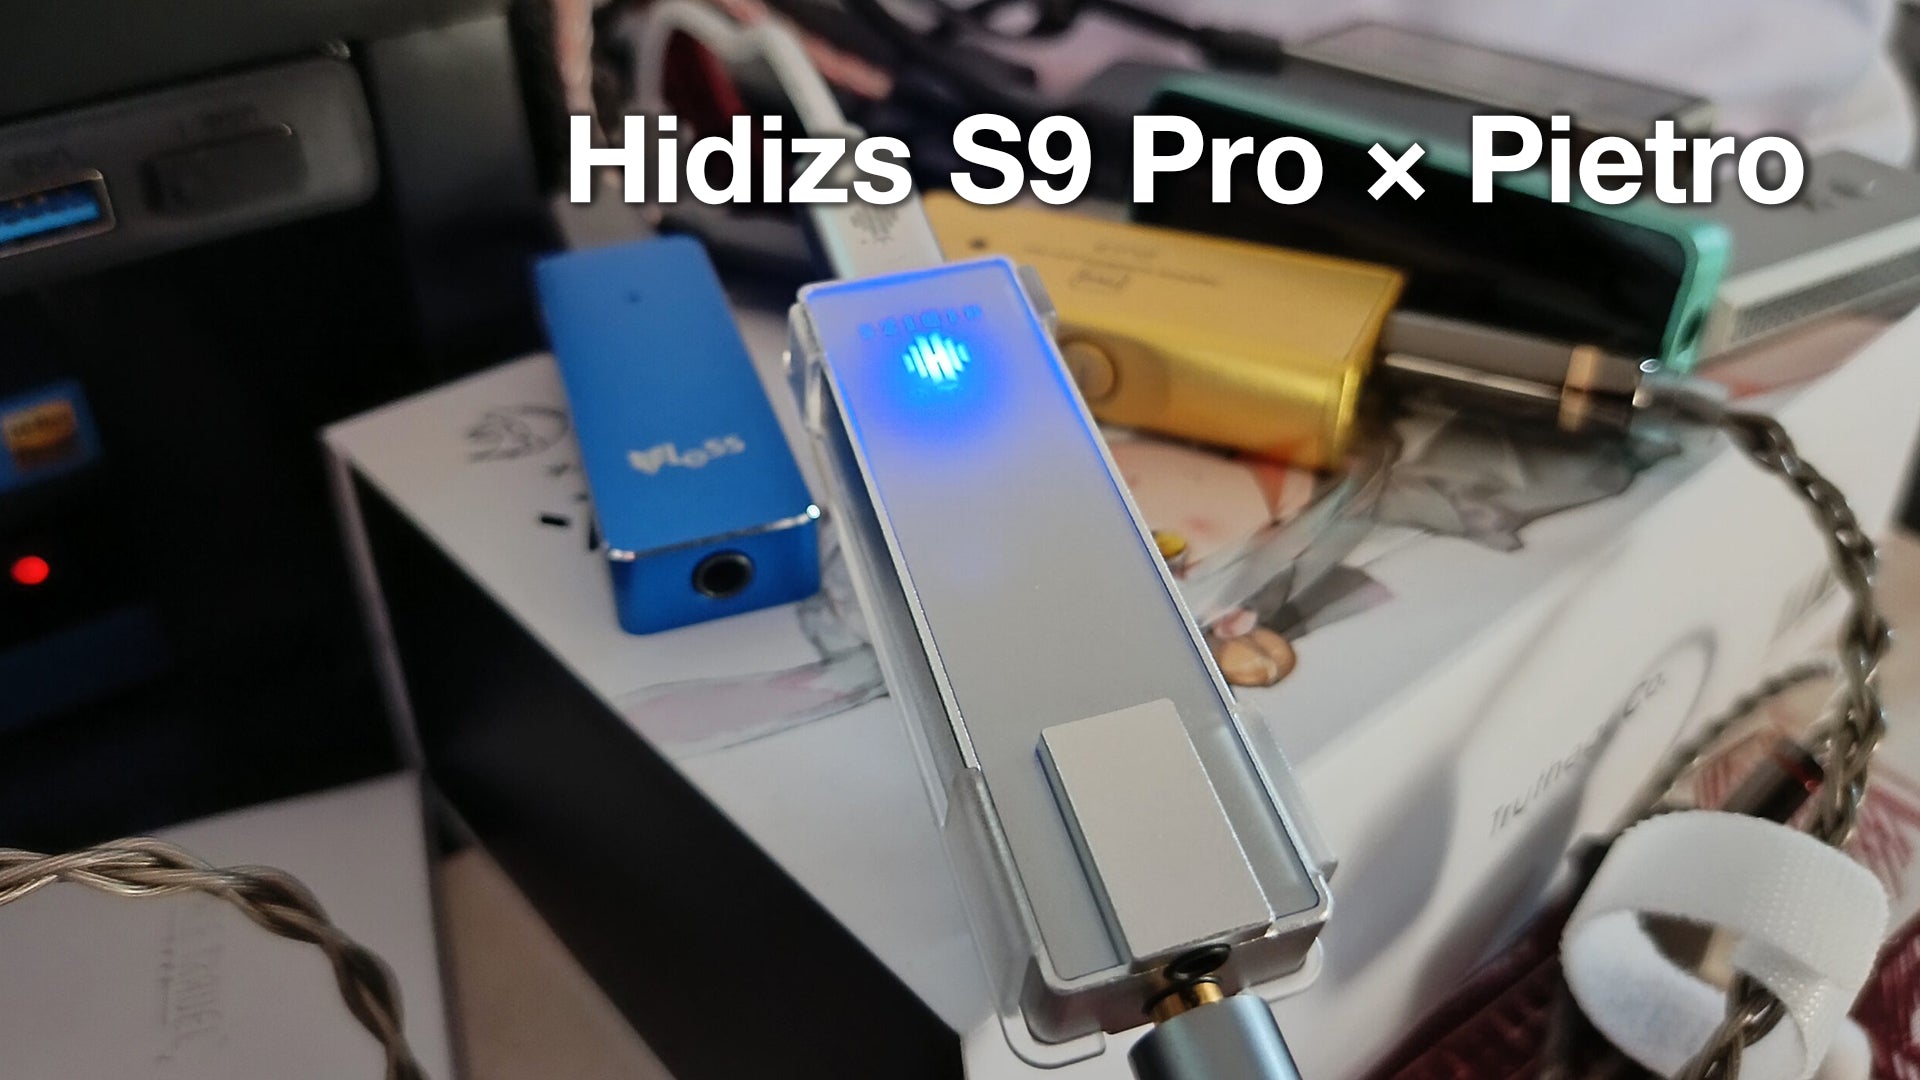 Hidizs S9 Pro Review - Pietro